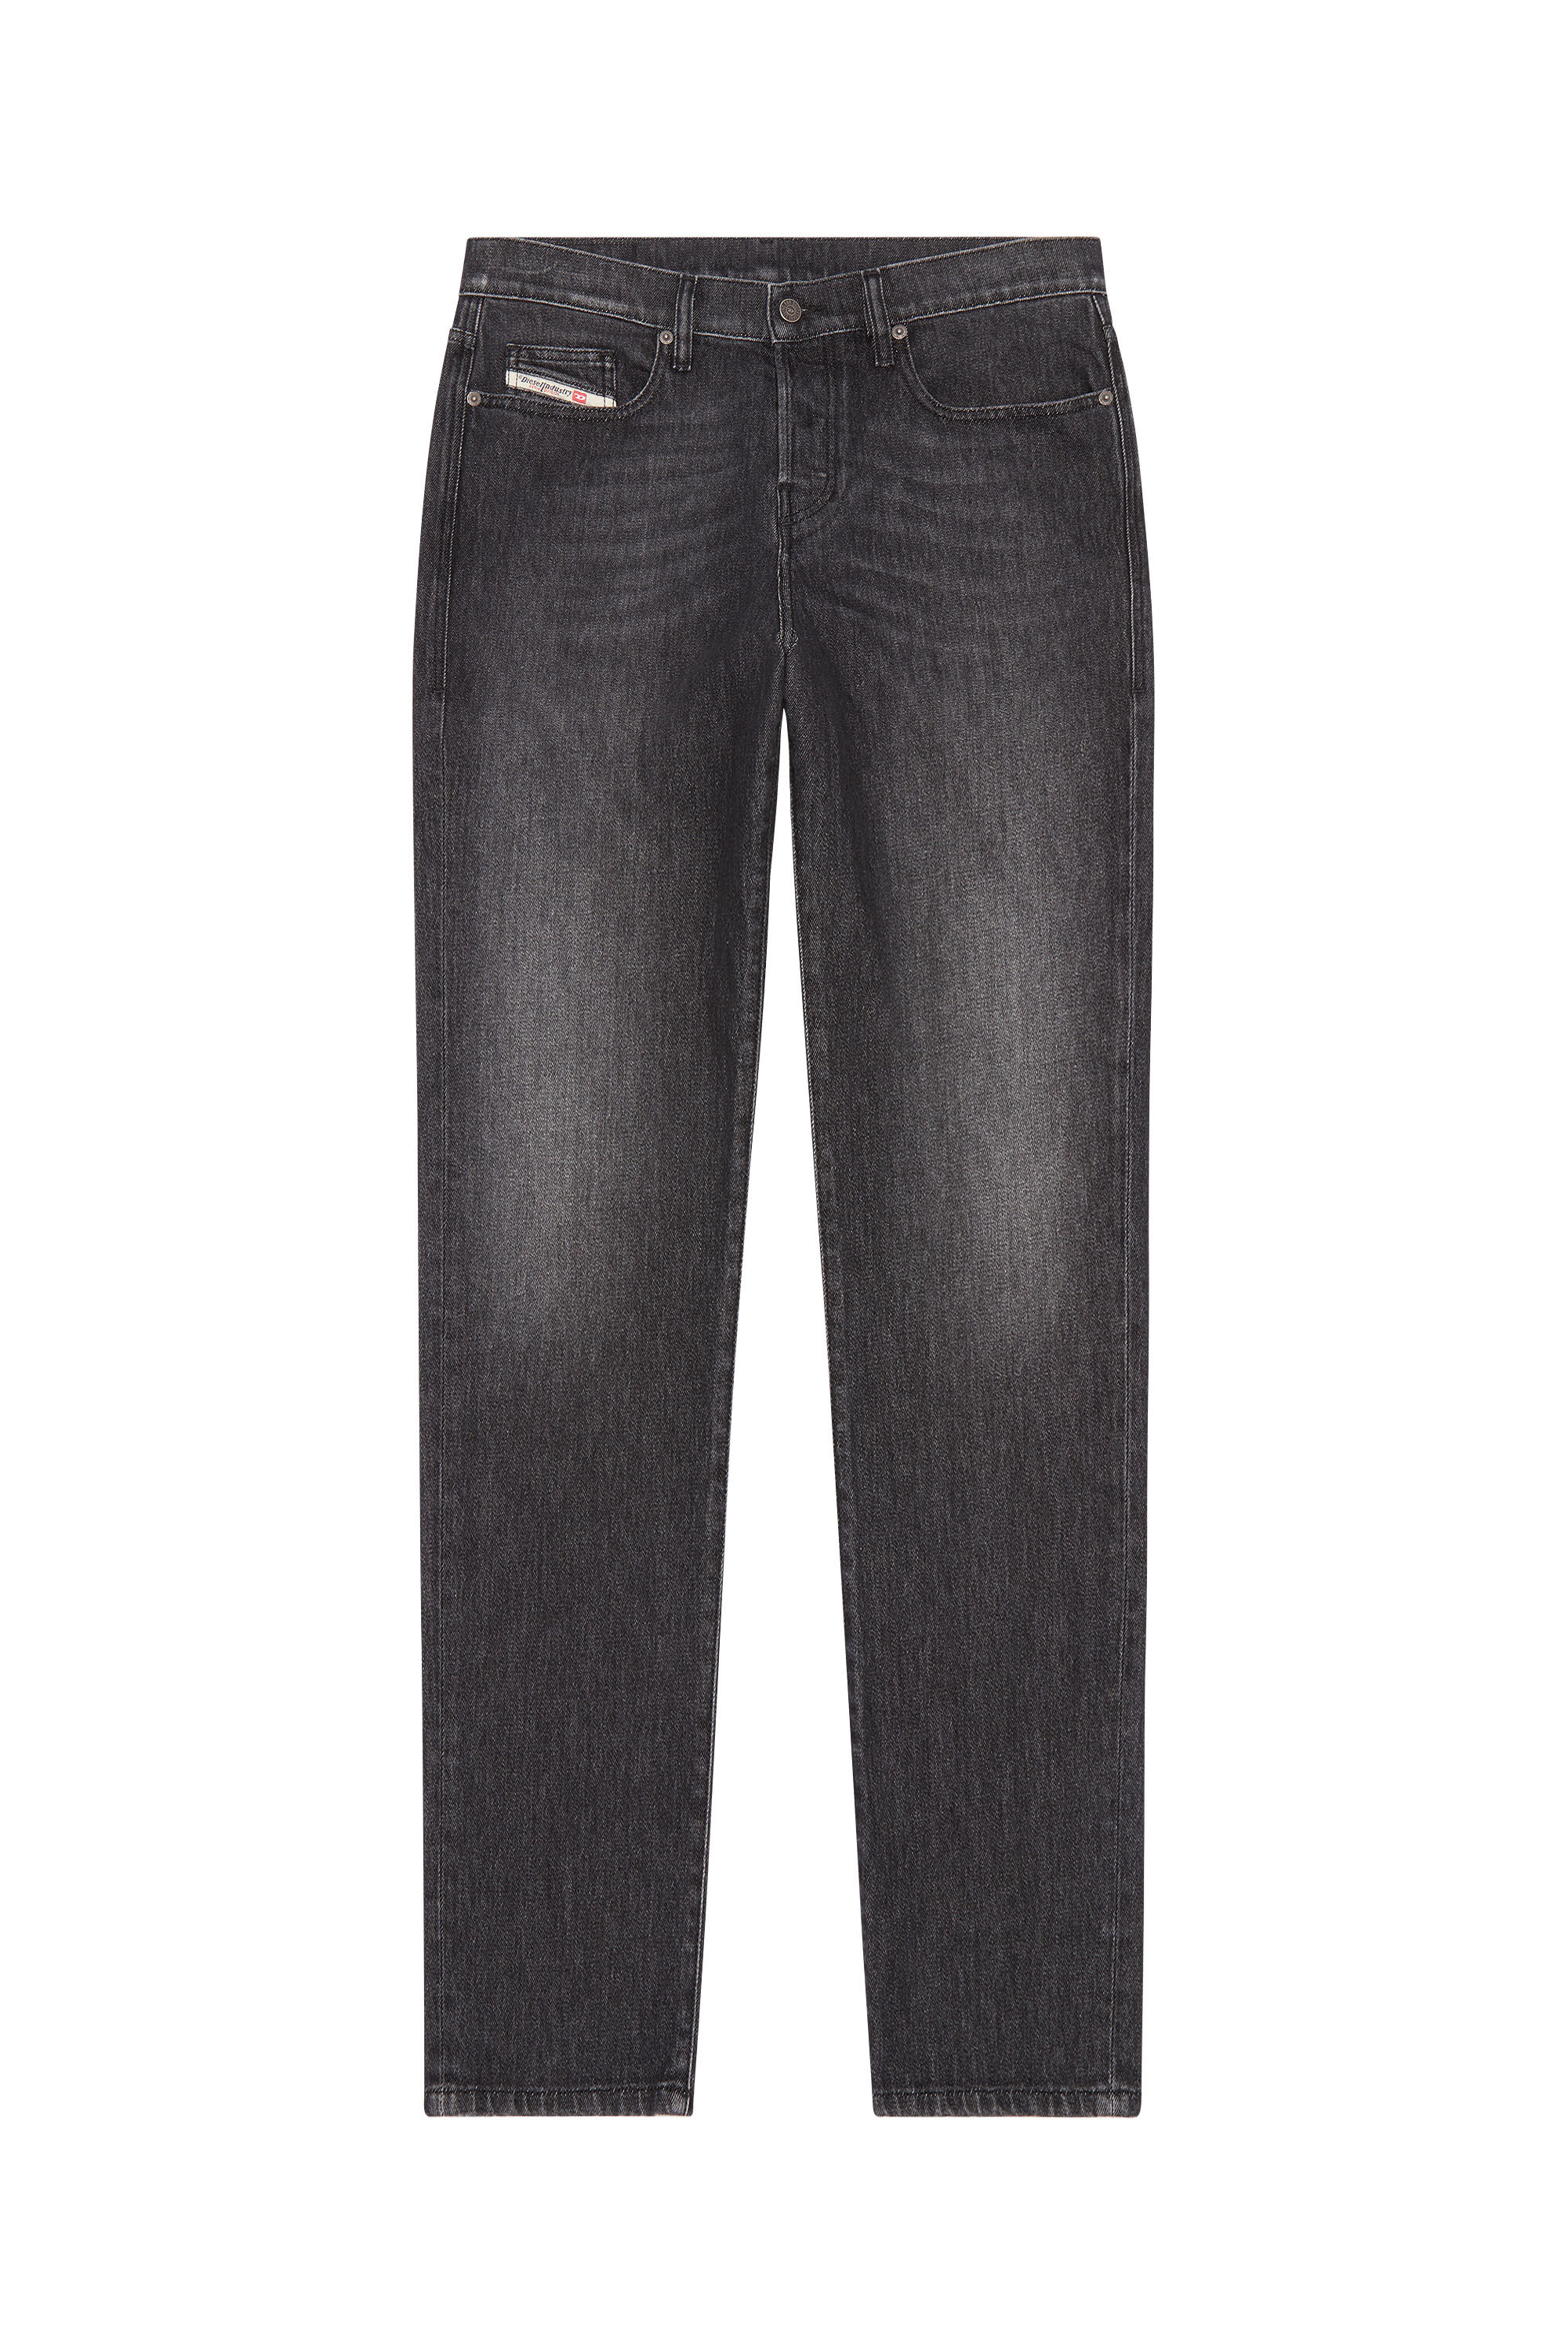 Diesel - Straight Jeans 2020 D-Viker 09F75, Black/Dark grey - Image 2